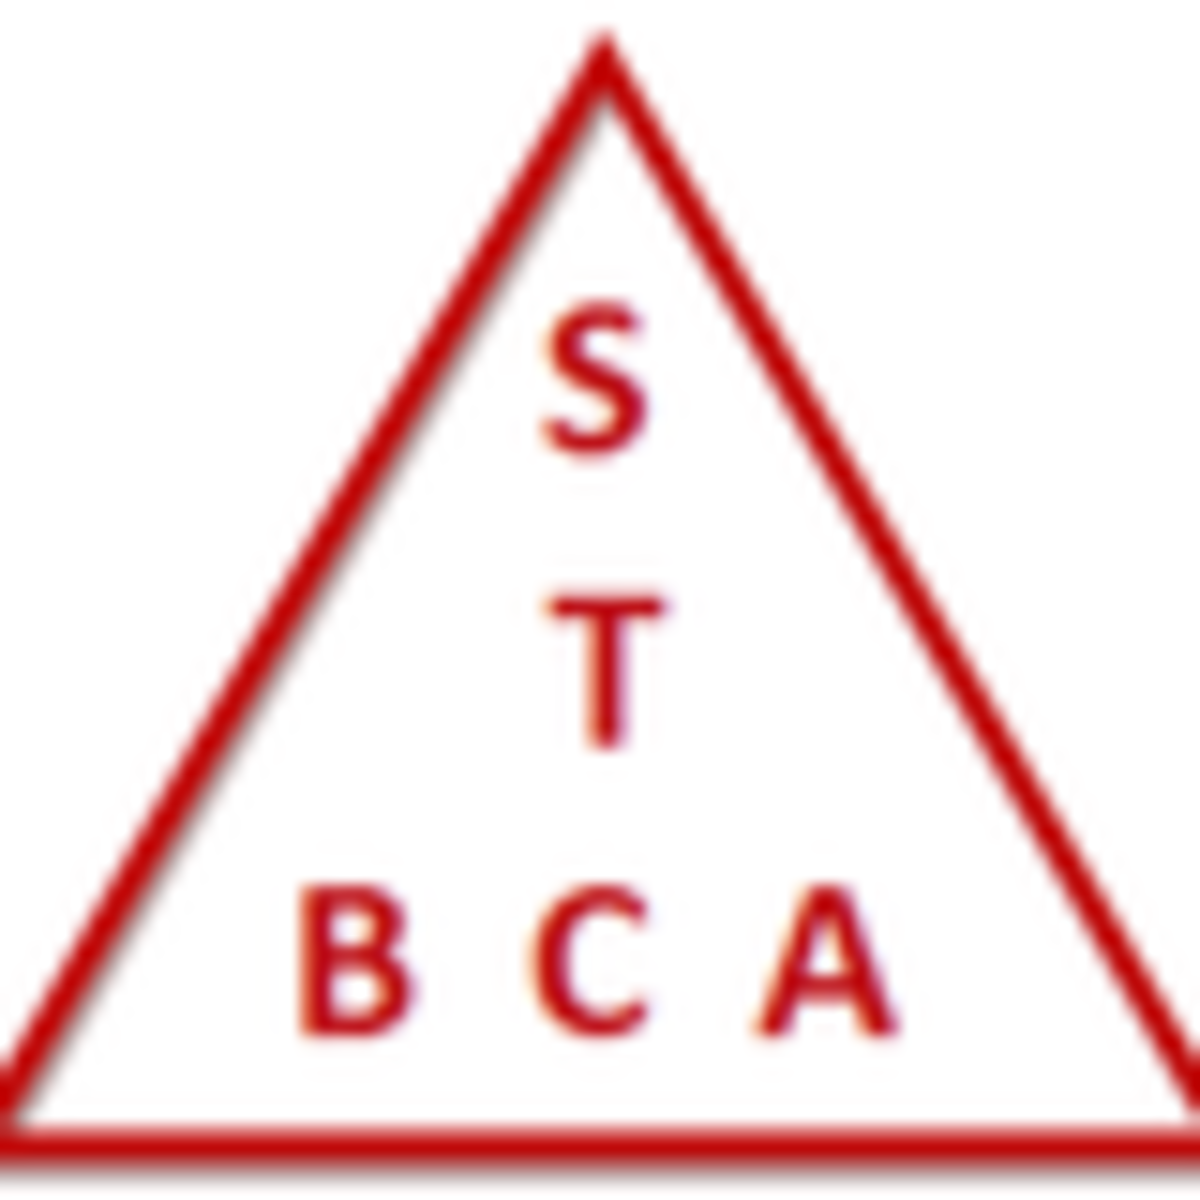 STBCA logo